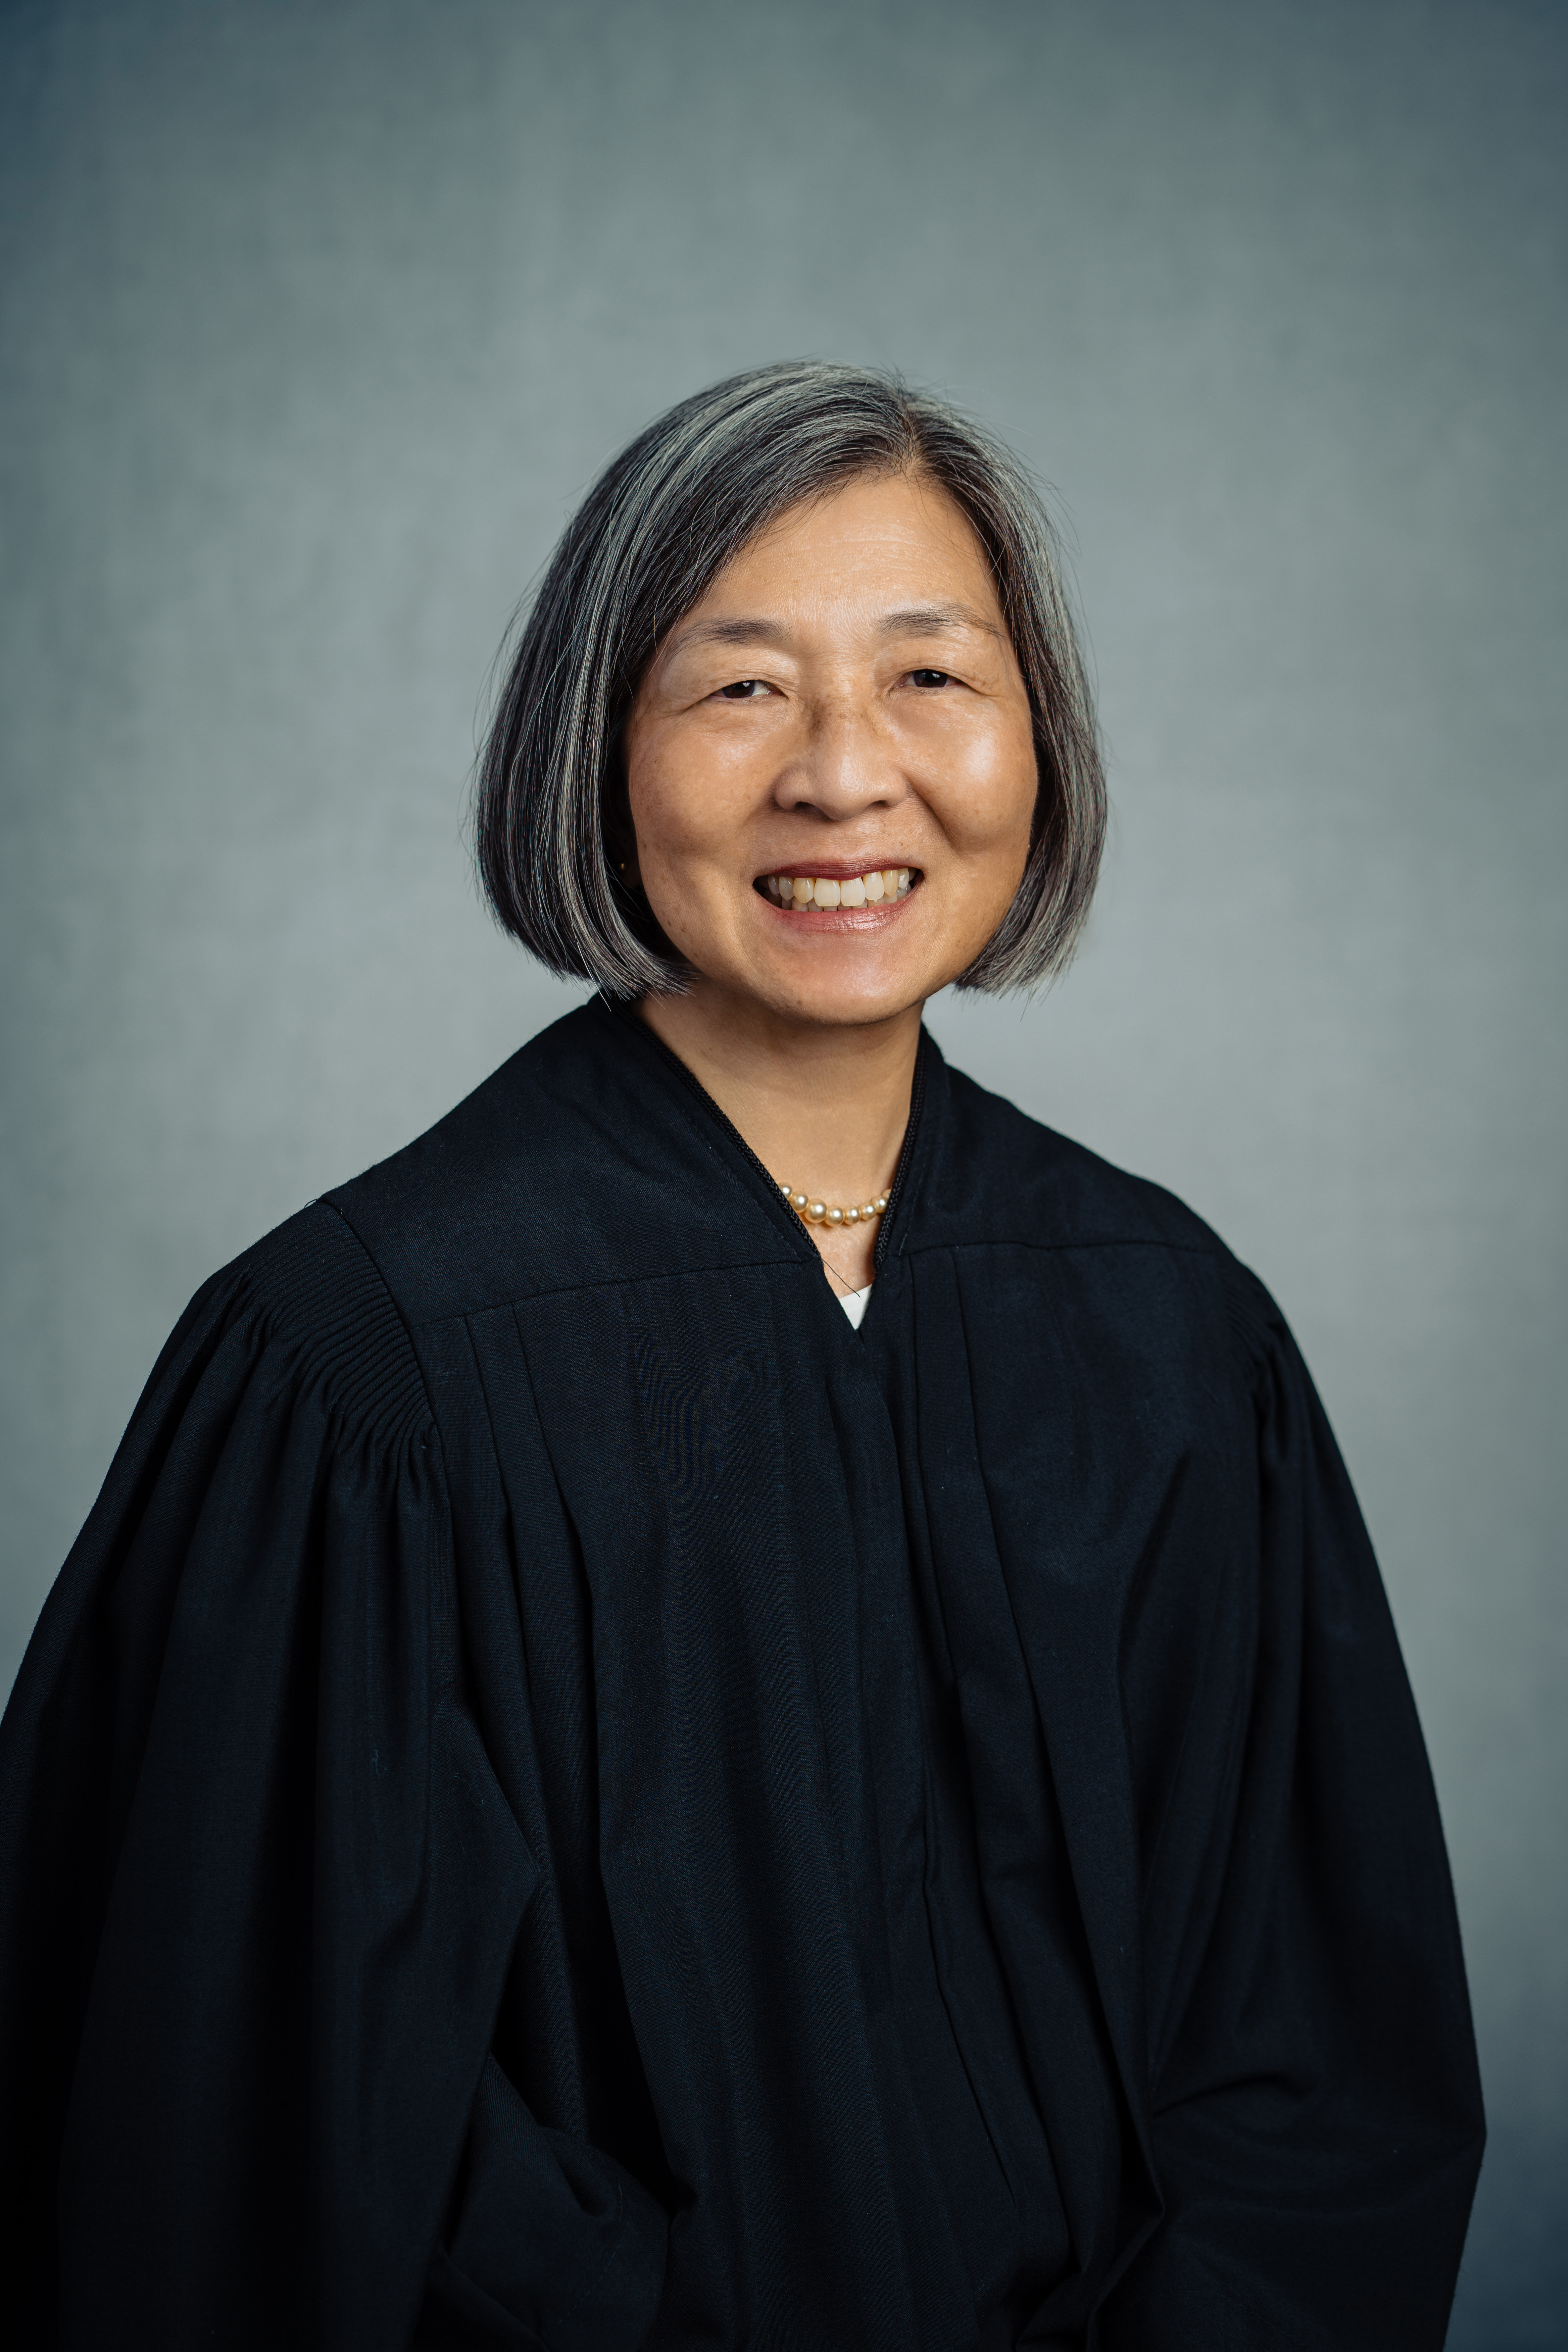 Judge Andrea Chin